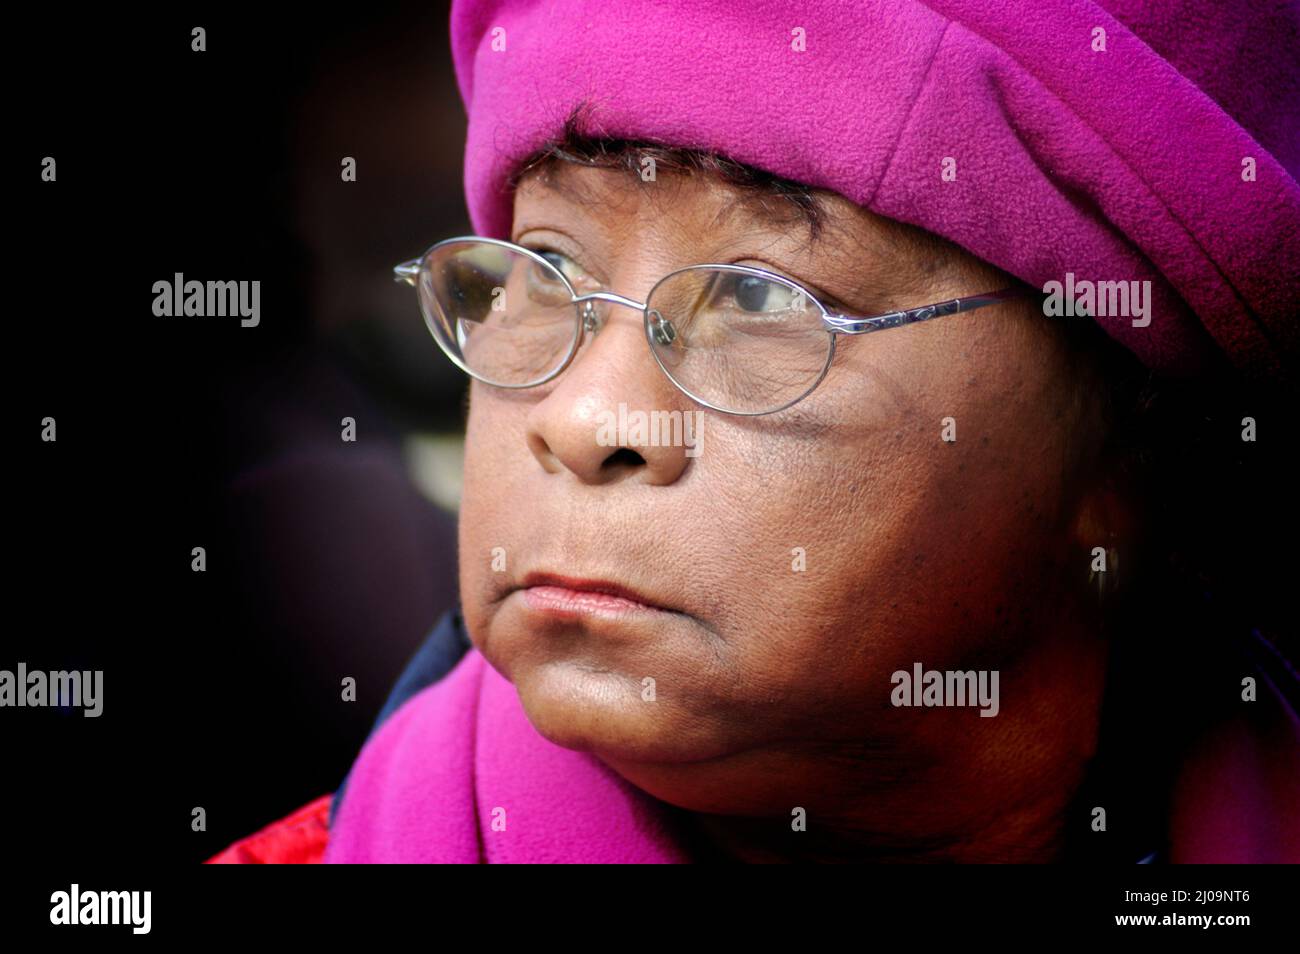 Le visage complet de la femme âgée, grand-mère de 22 ans, à la manifestation des droits civils dans des couleurs vives avec des lunettes et un espace de texte, est ethnique Banque D'Images